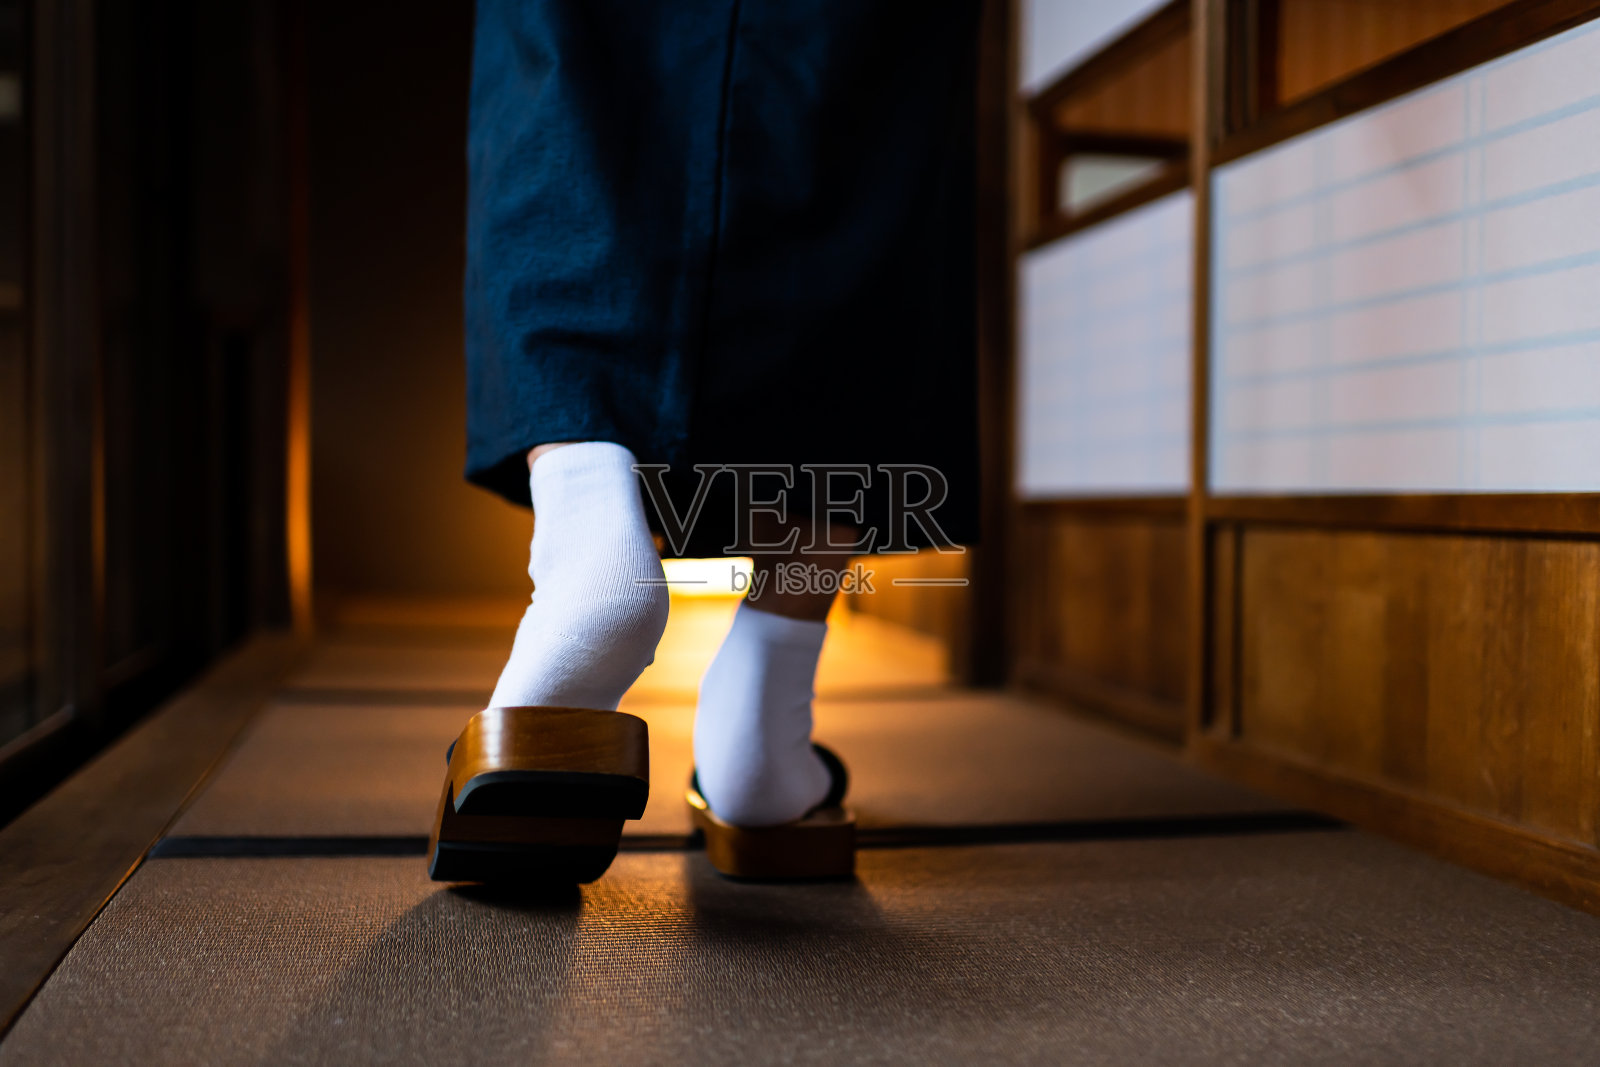 日本日式传统房子和男人在和服后的特写腿脚与tabi白色袜子和得到鞋走过shoji滑动纸门和榻榻米地板照片摄影图片